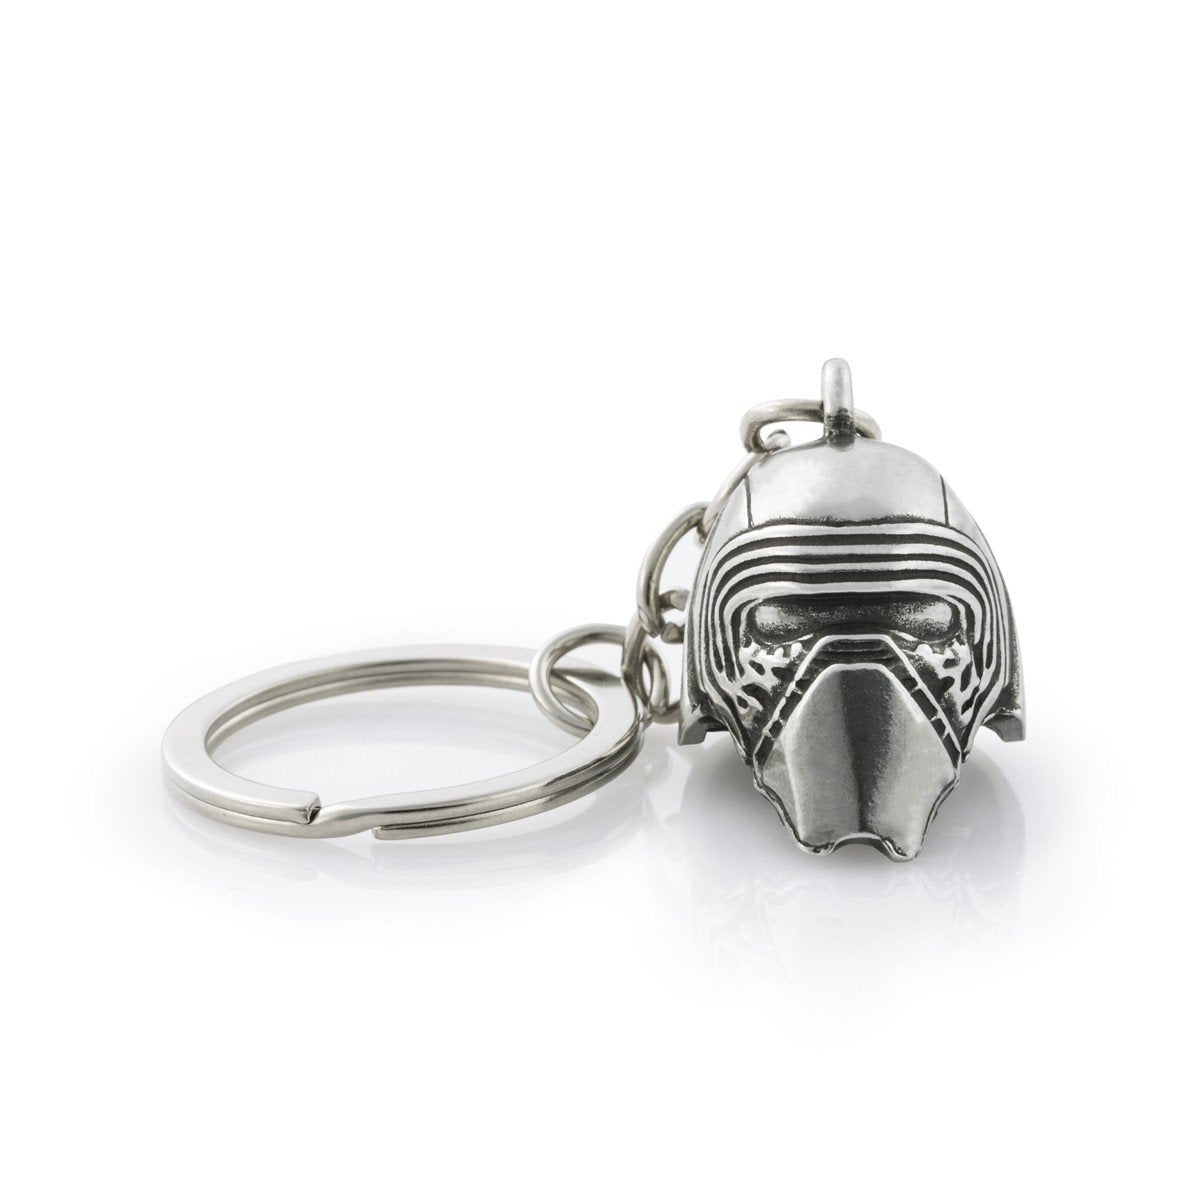 Star Wars Kylo Ren Keychain - Collectible Gift